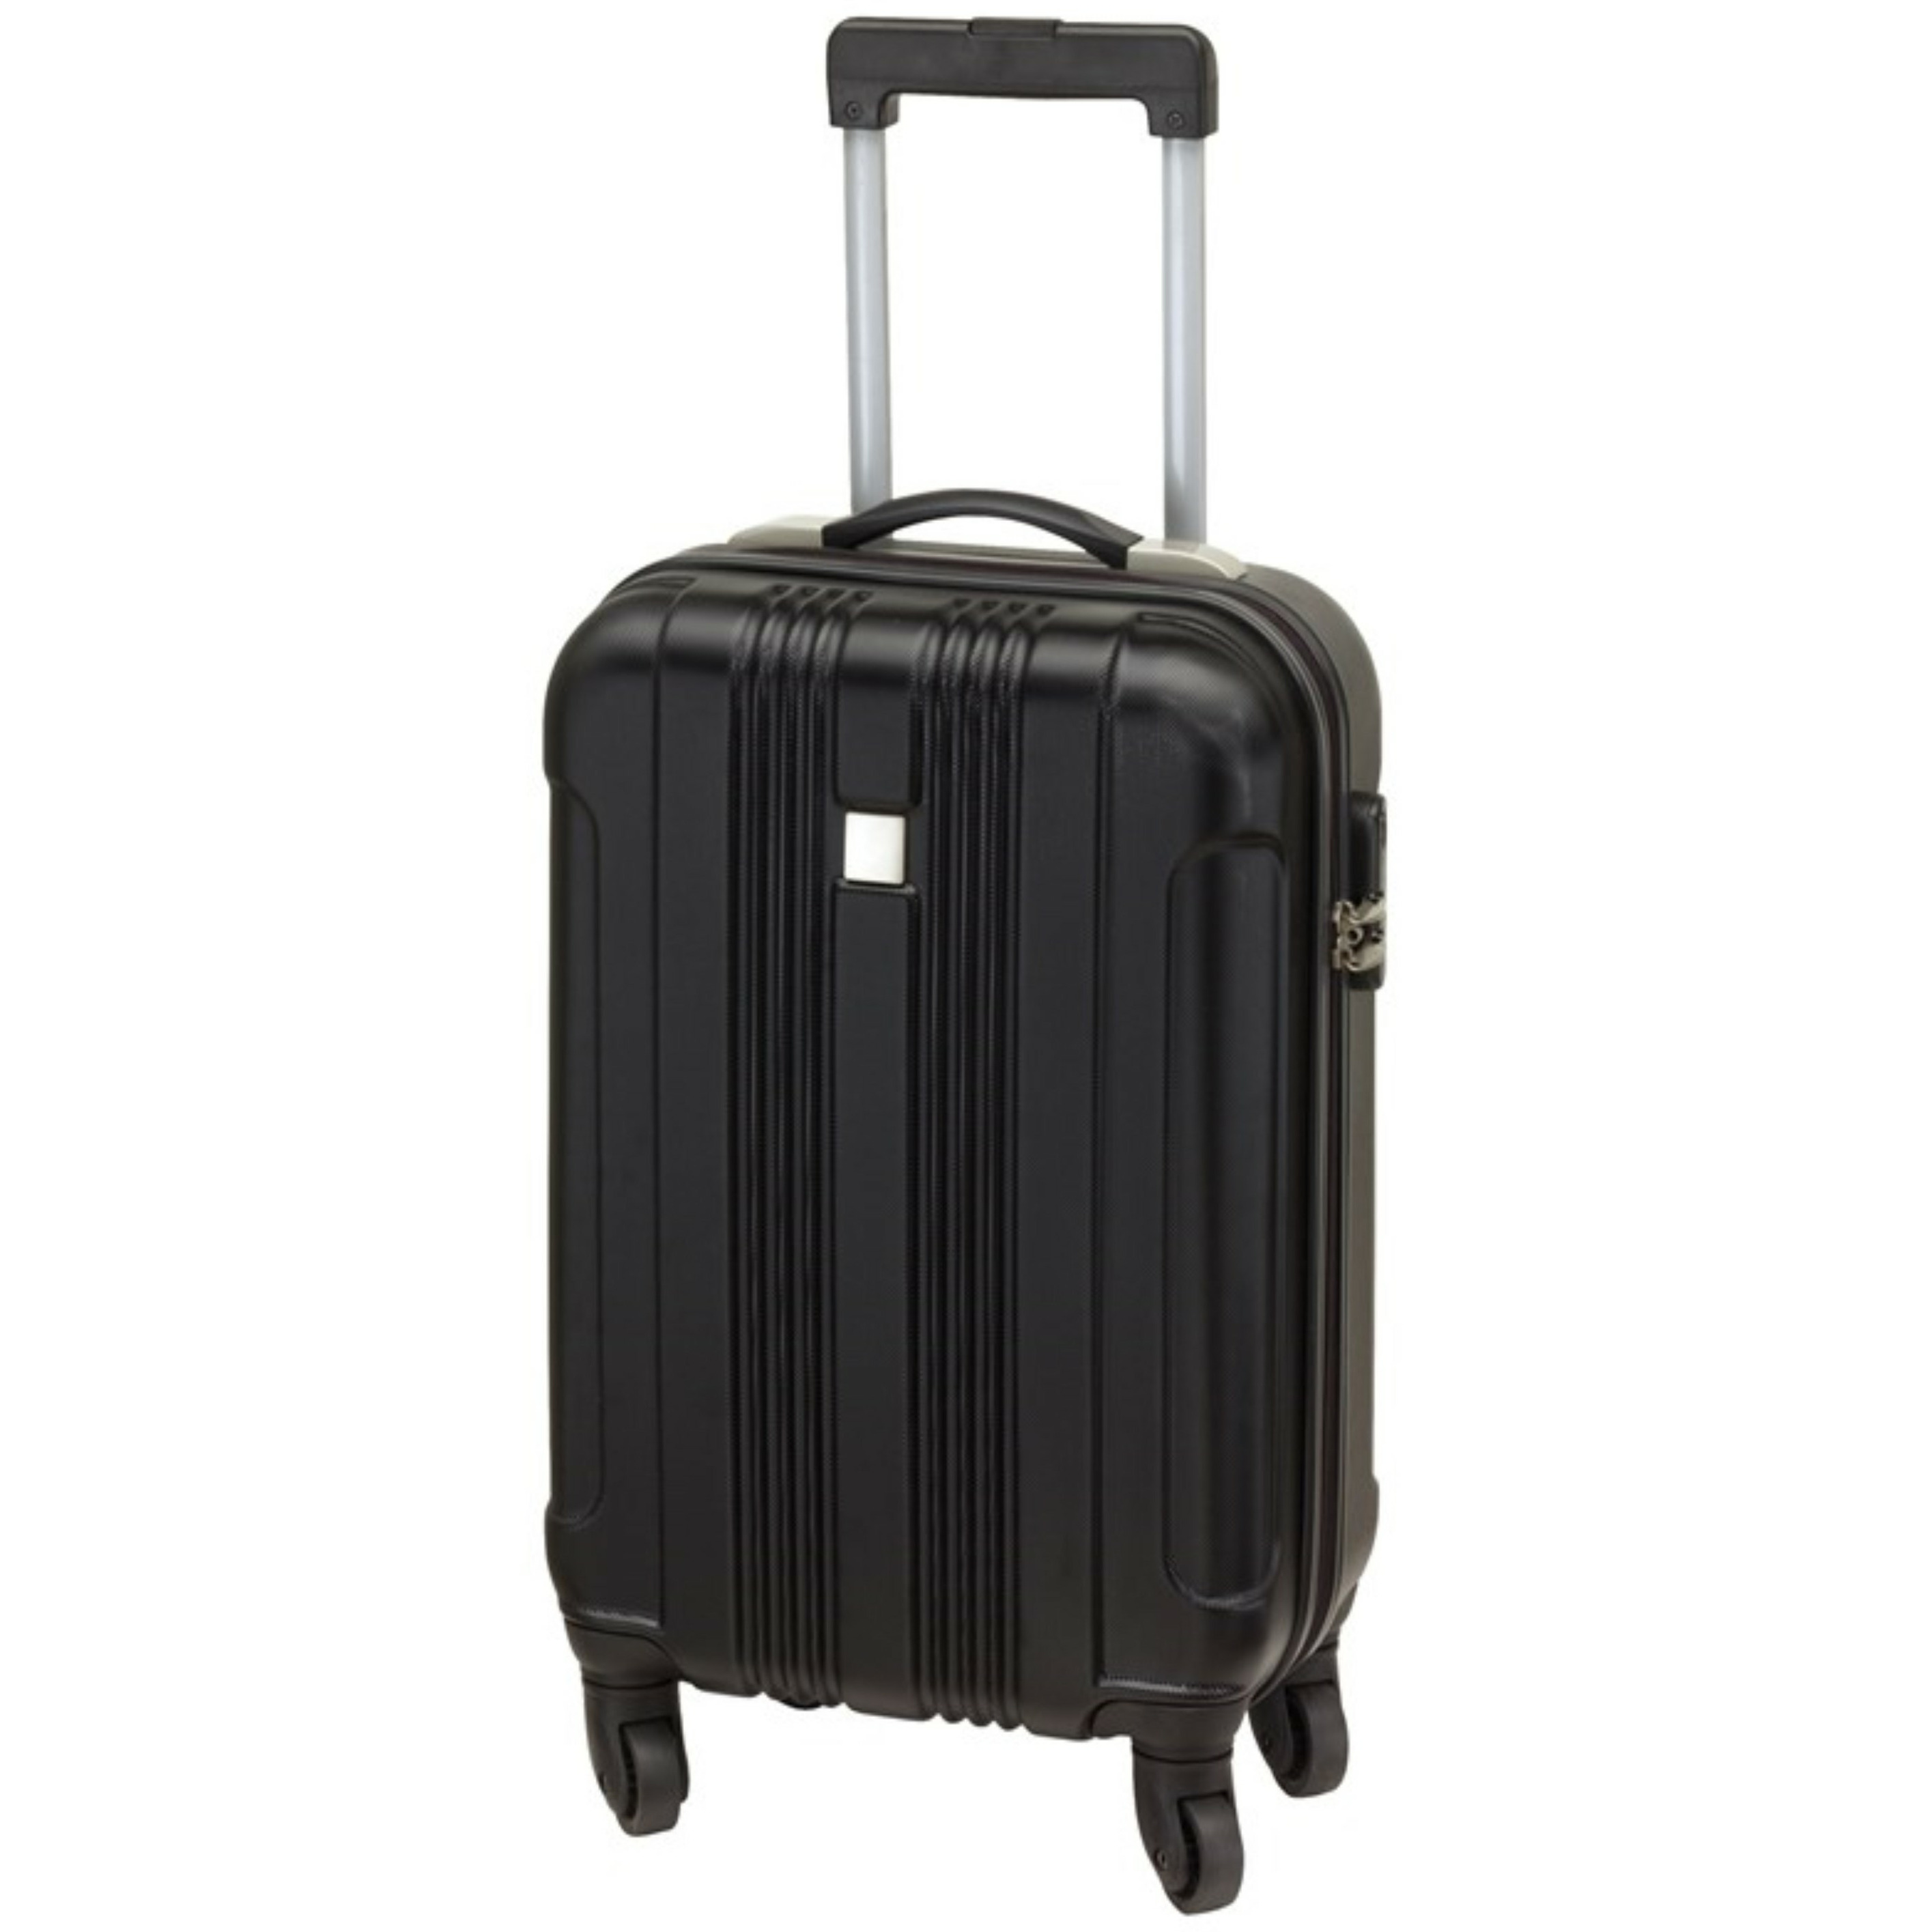 Cabine handbagage reis trolley koffer met zwenkwielen 55 x 35 x 20 cm zwart